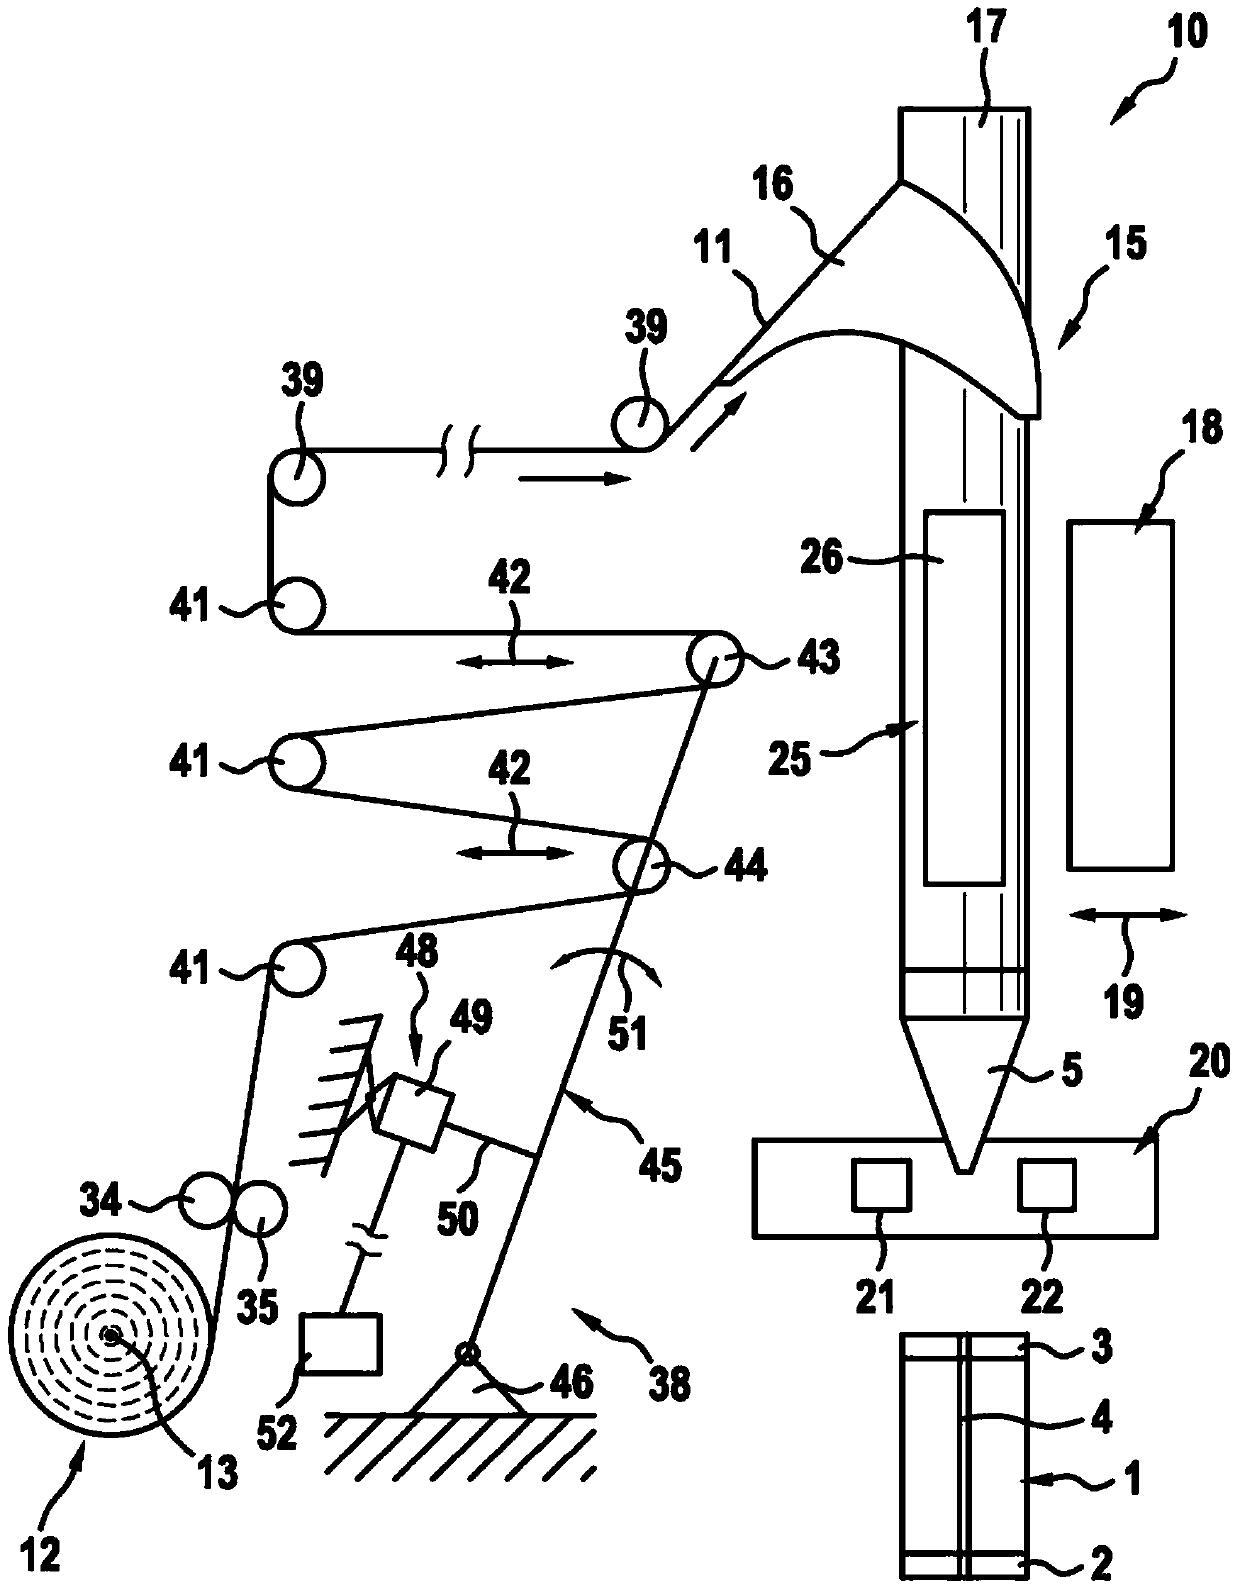 Tubular bag machine and method for operating a tubular bag machine